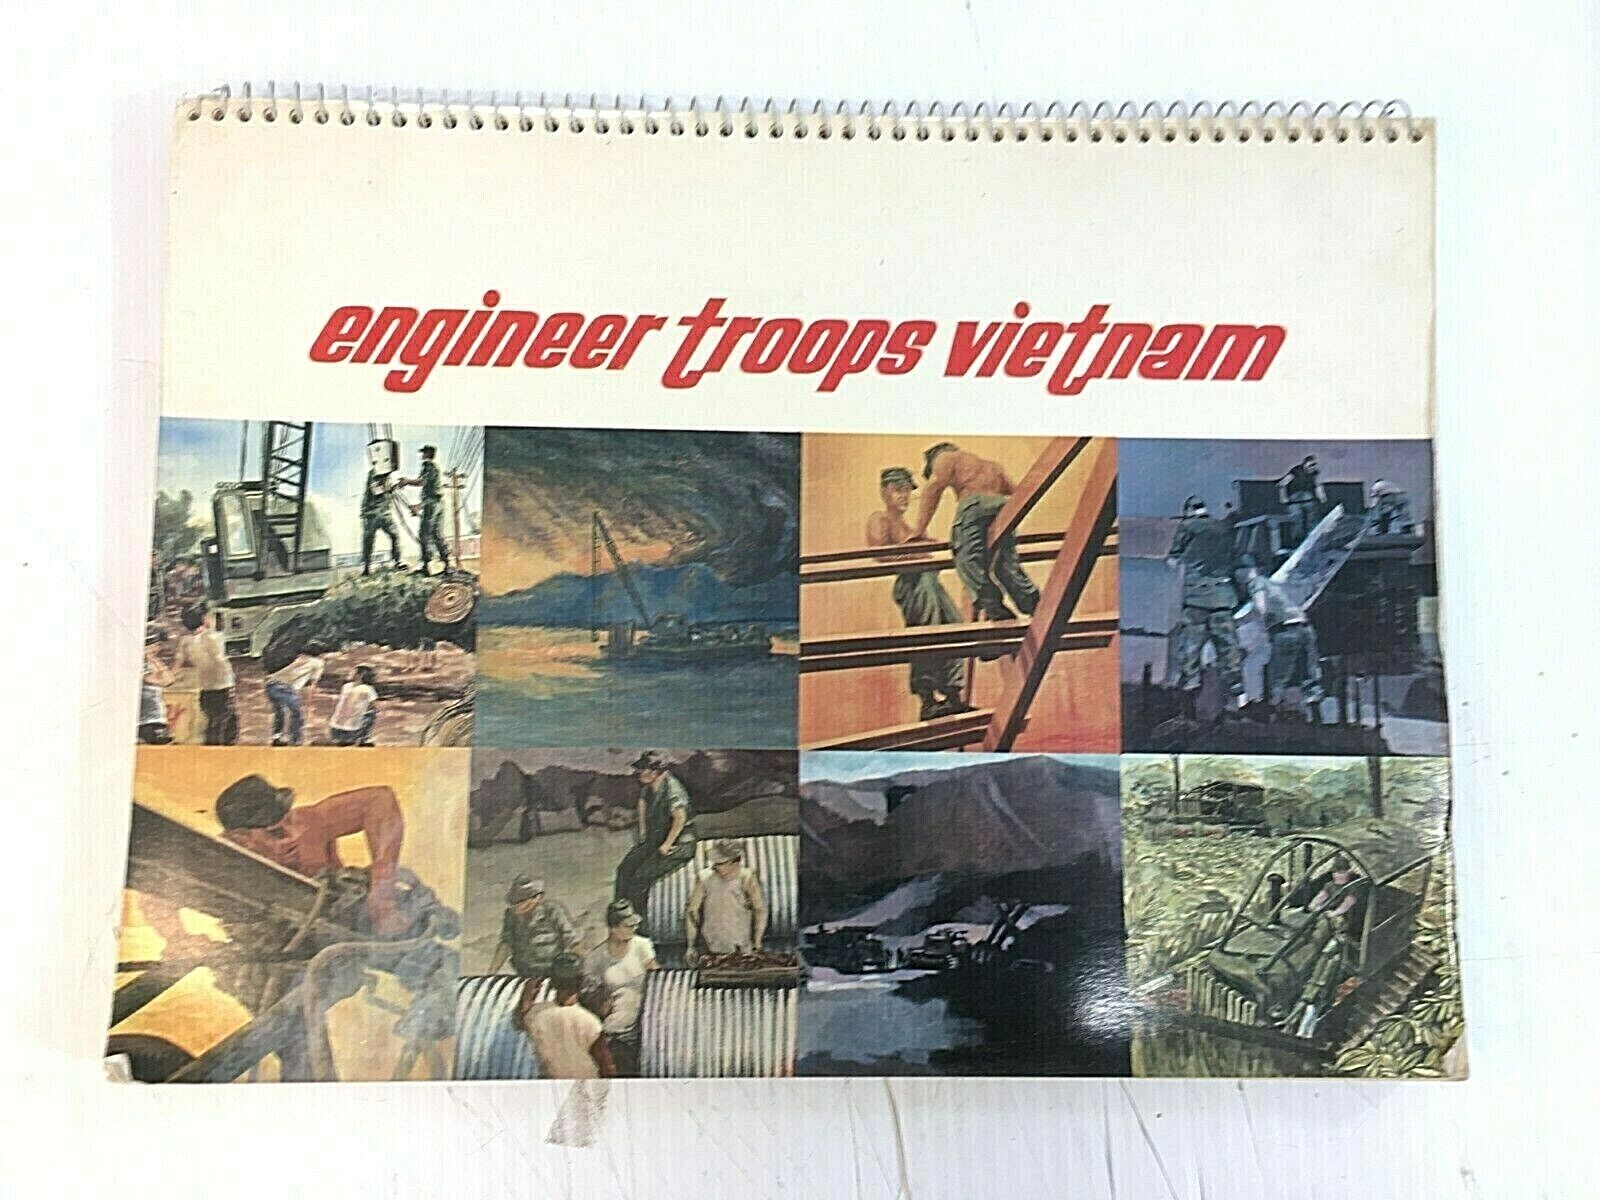 1967 Engineer Troops In Vietnam - Military Unit History Art Plates Print Vintage